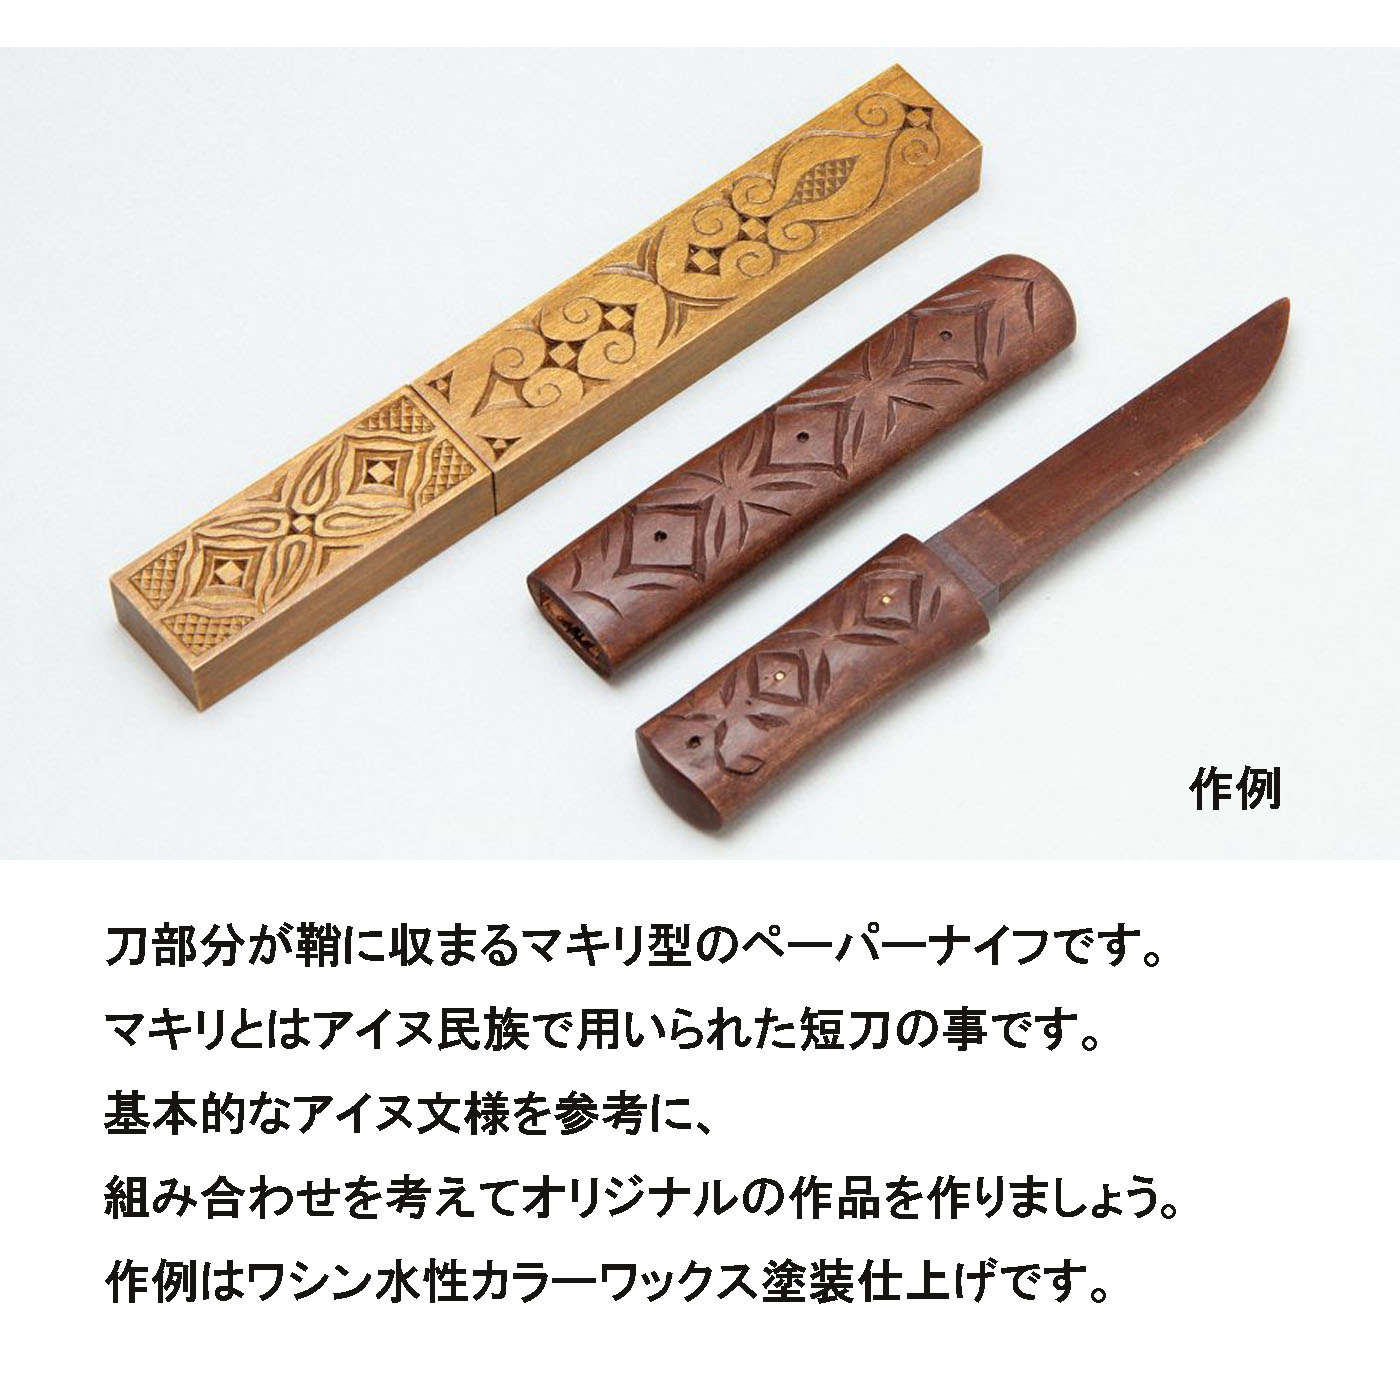 コトブキヤ文具店ONLINESHOP / マキリ型ペーパーナイフ